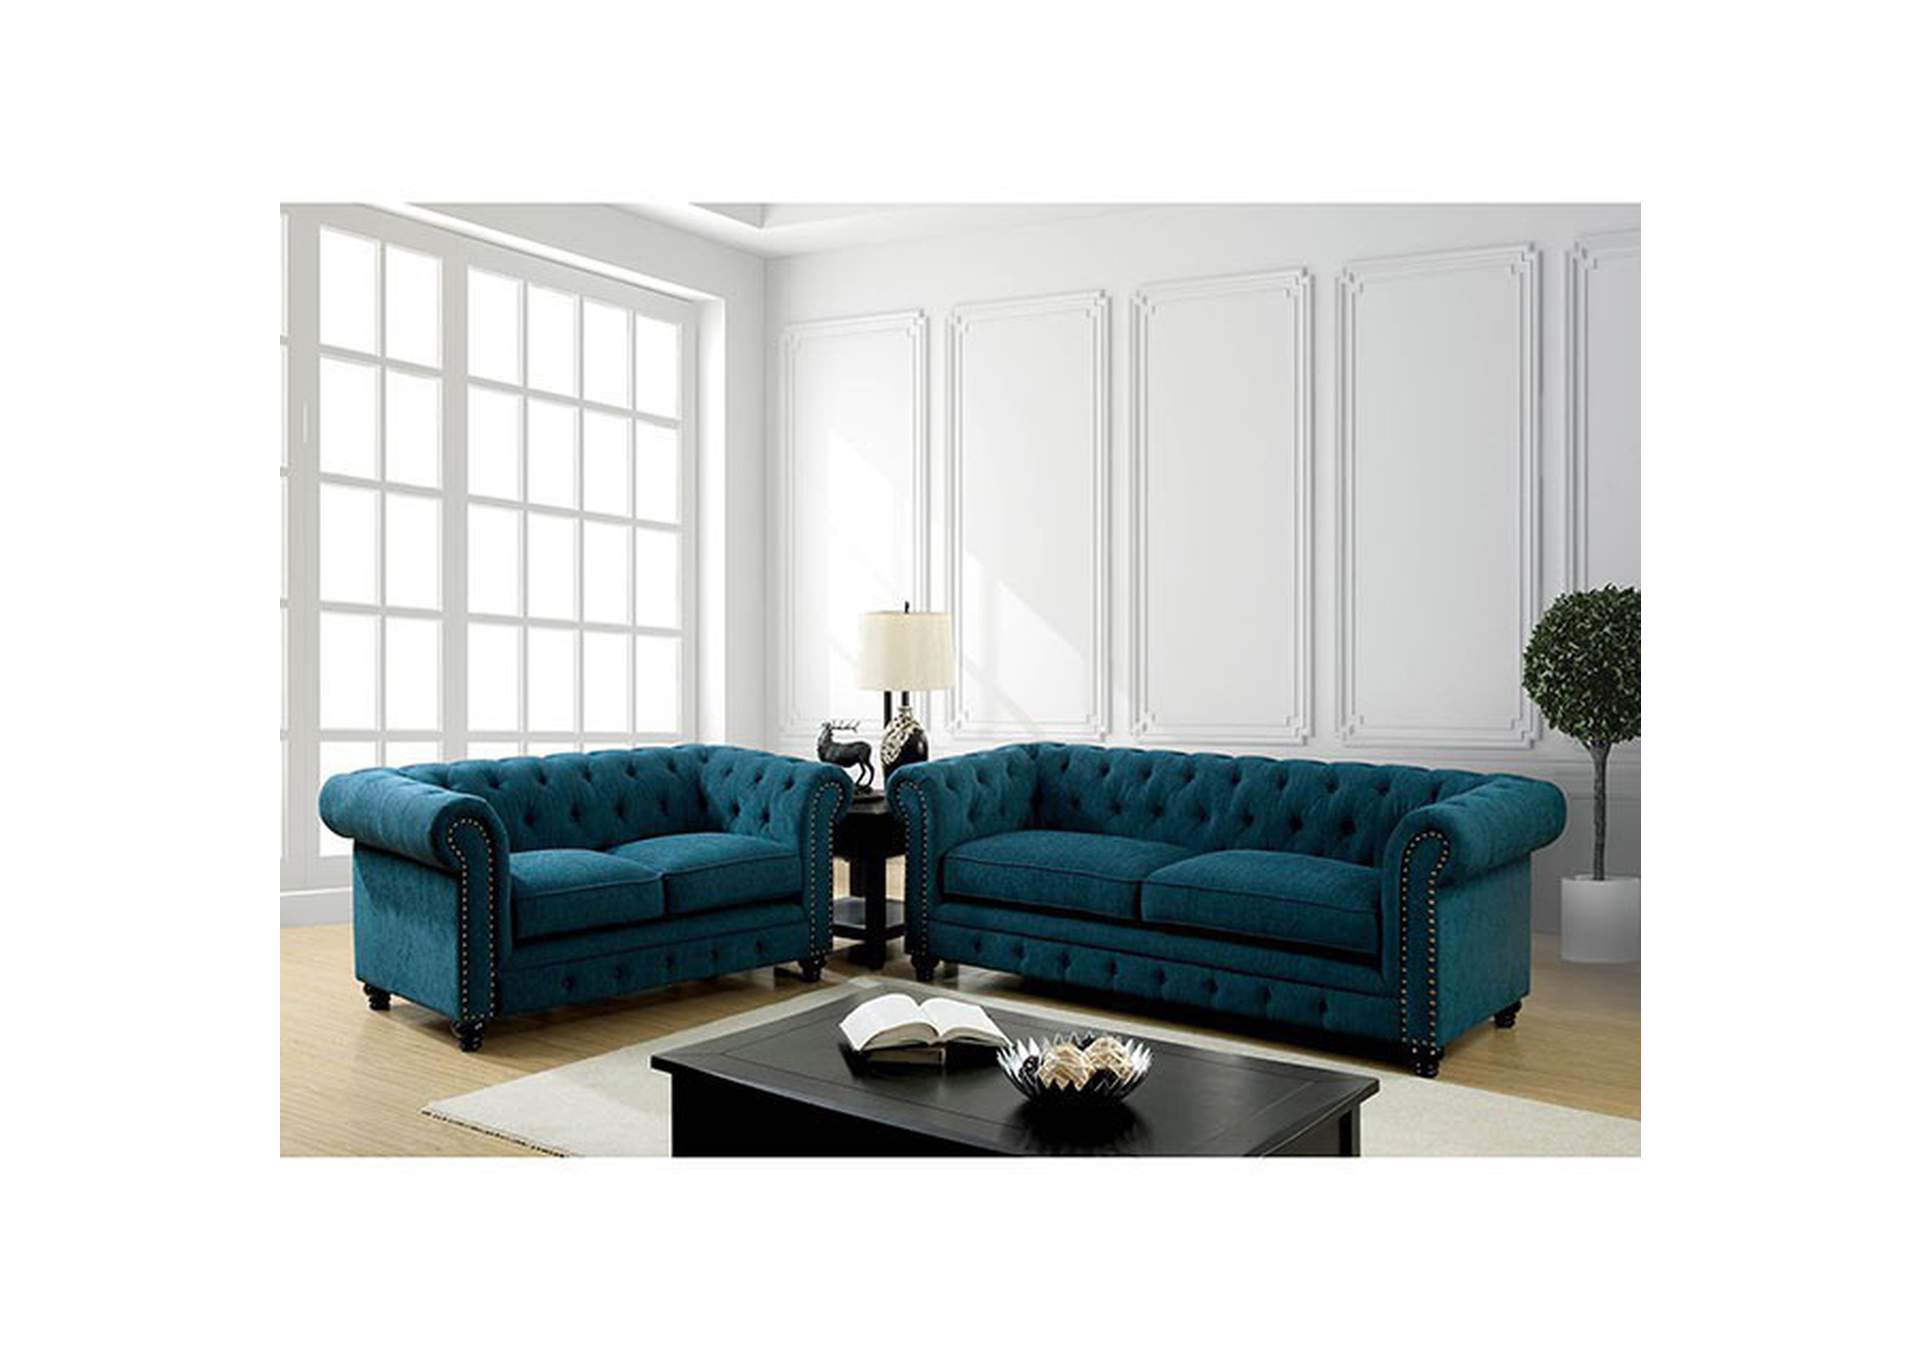 Stanford Sofa,Furniture of America